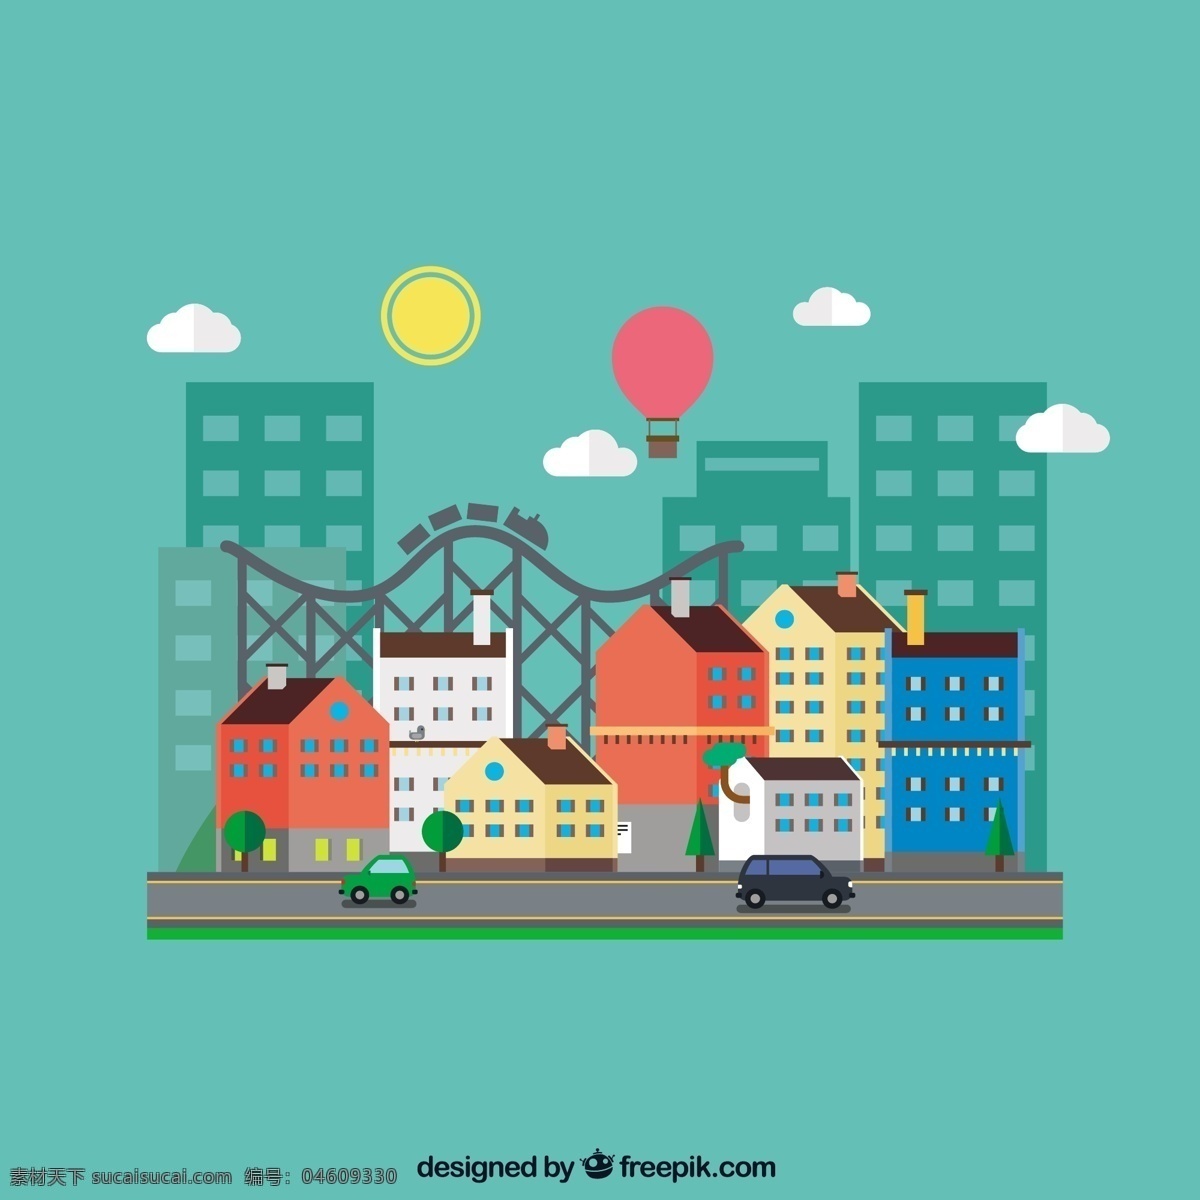 房子 城市 图标 动画 建筑 景观 街道 城镇 家里的图标 房屋 城市建筑 街区 城市景观 过山车 青色 天蓝色